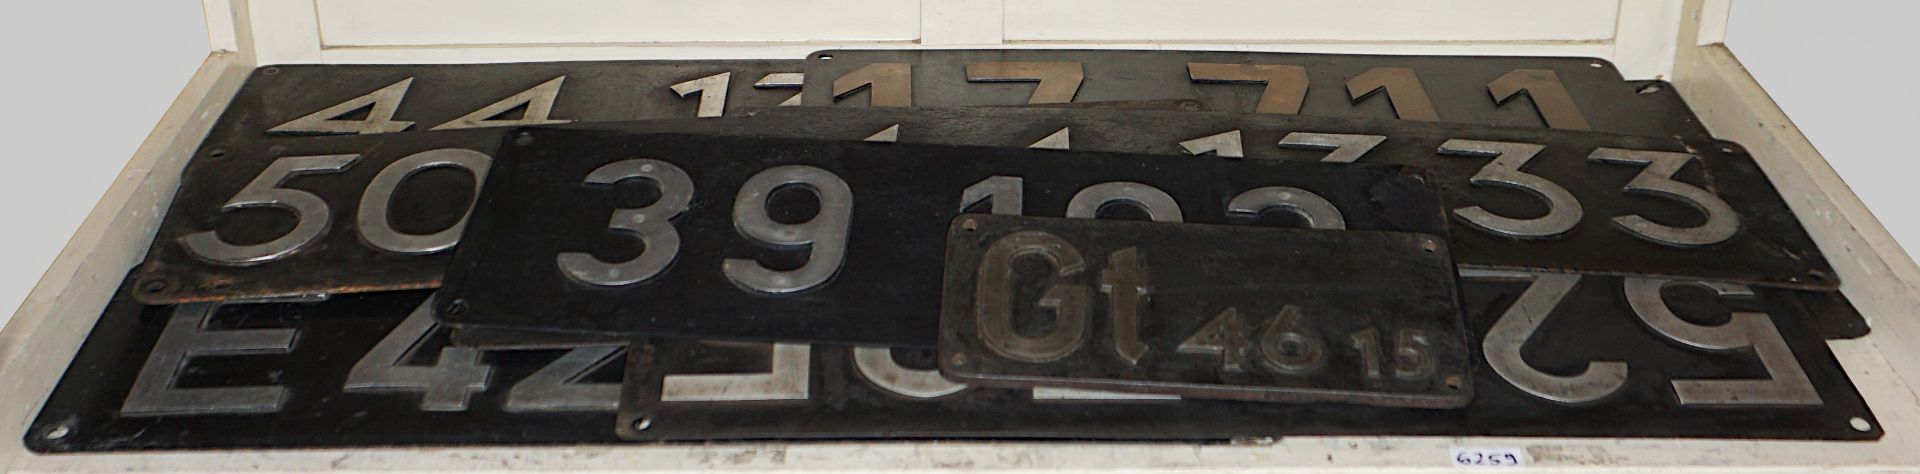 1 Konv. Eisenbahnschilder Metall 20. Jh.versch. Nummern "DB" u.a., in versch. Größen